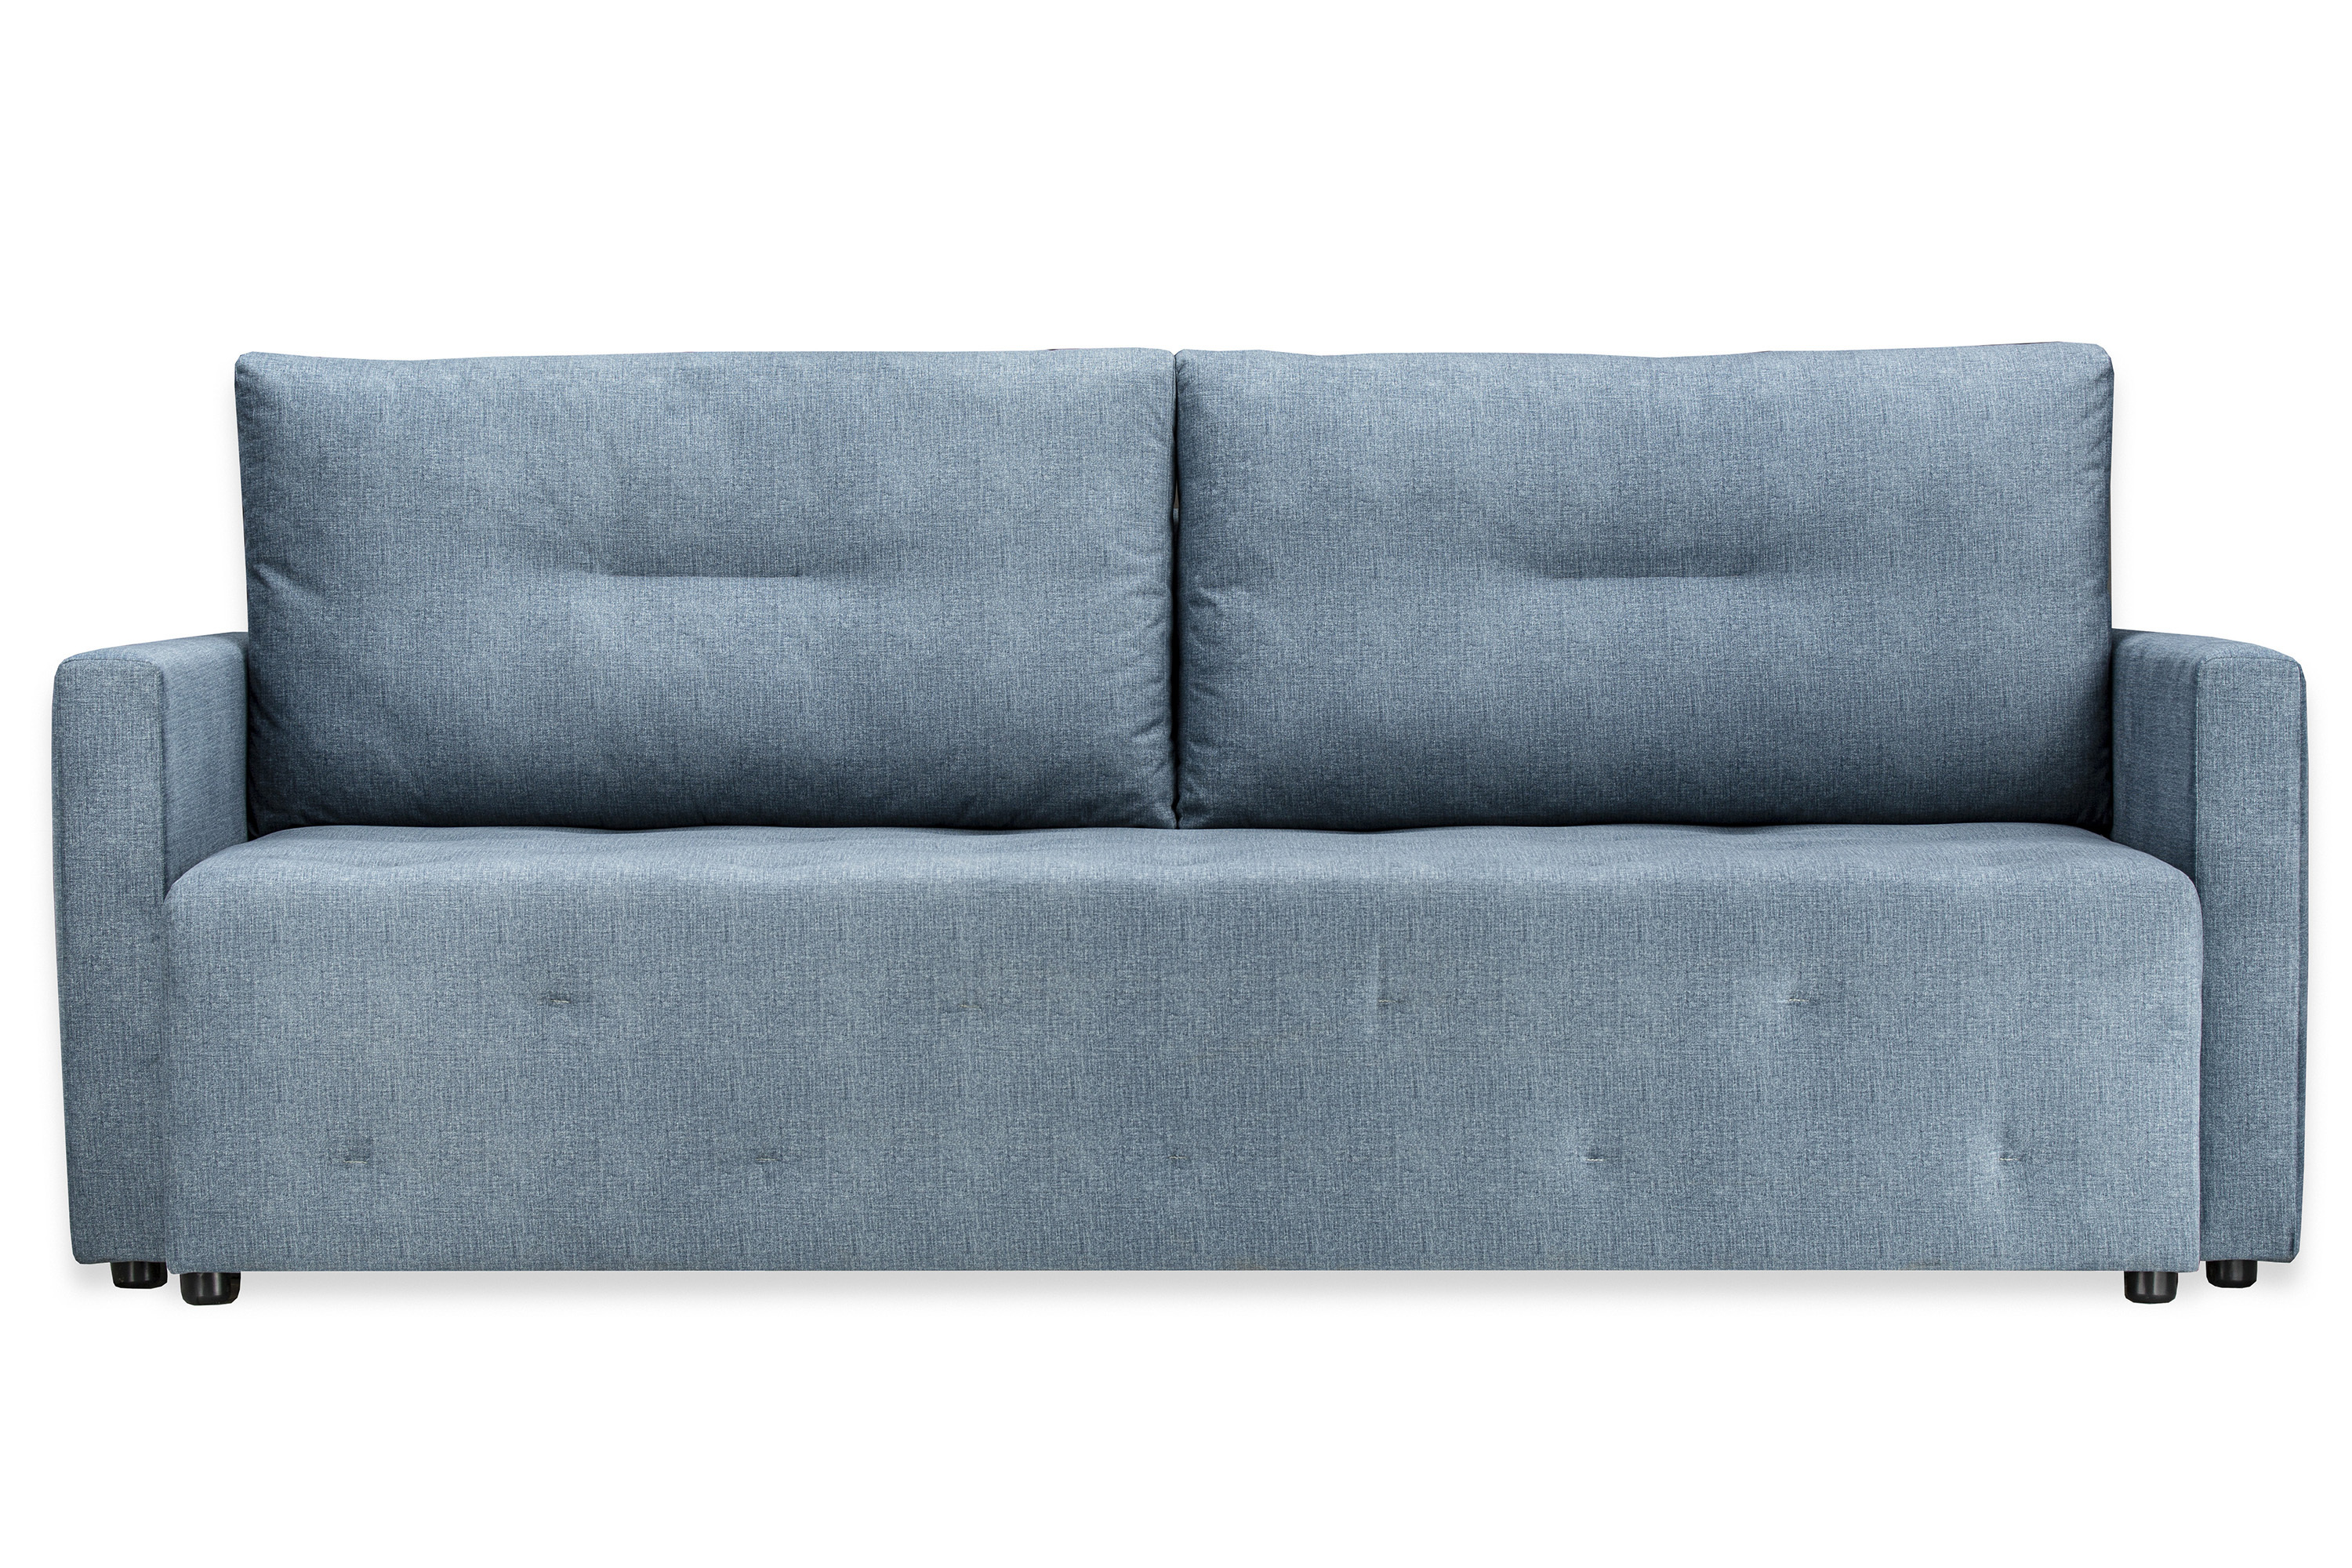 Как сделать диван мягче, а сон на нем полезнее?